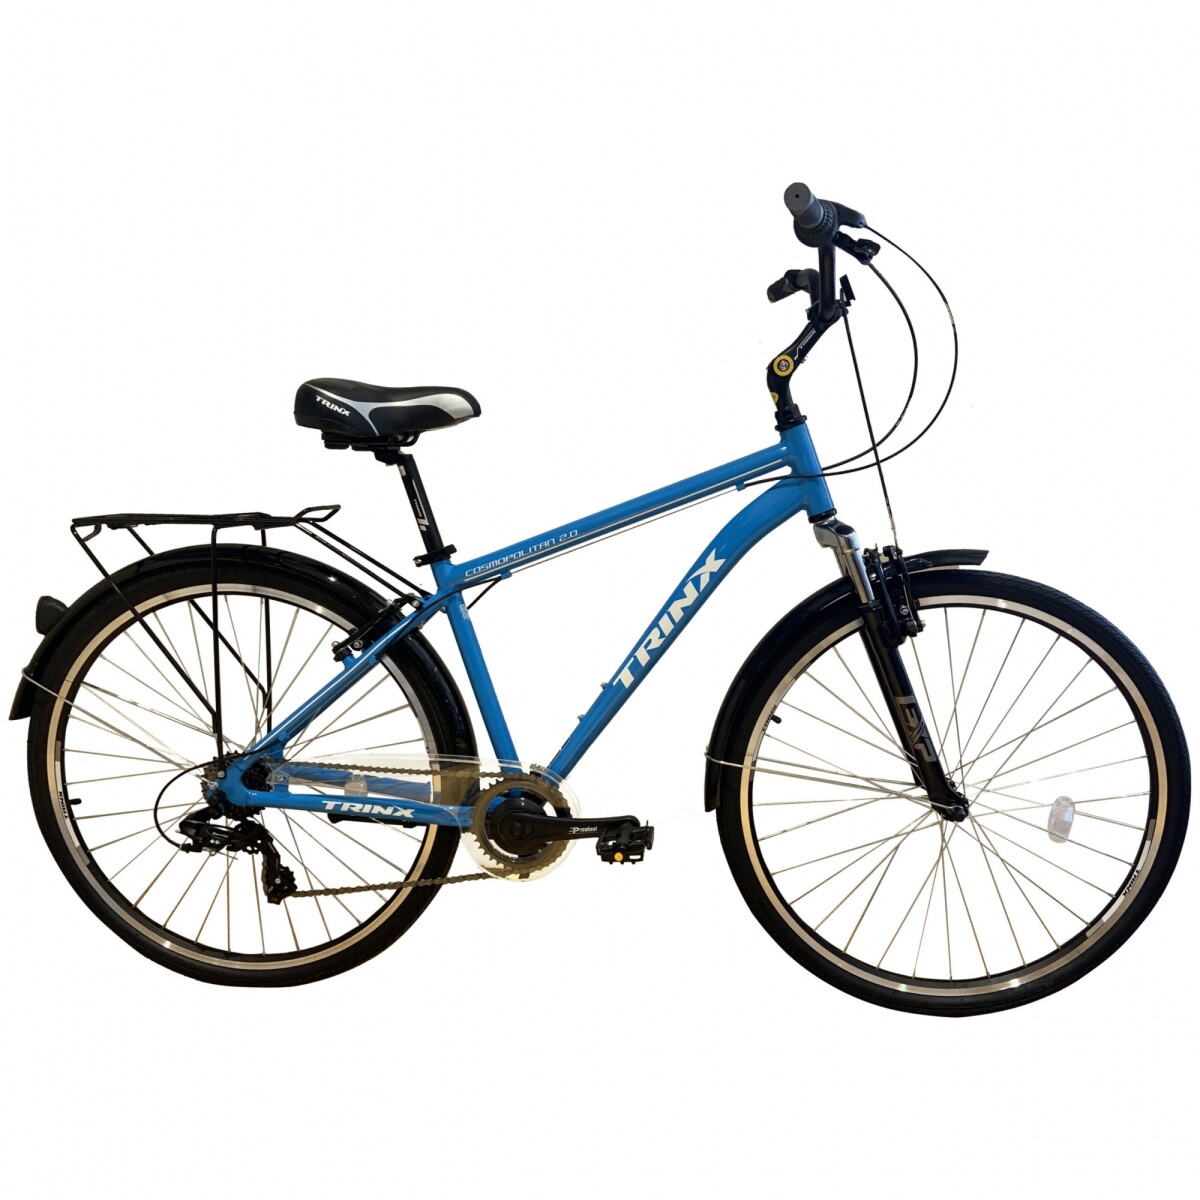 Bicicleta Trinx Cosmopolitan 2.0 Urbana Paseo Hombre Dama - 6202 